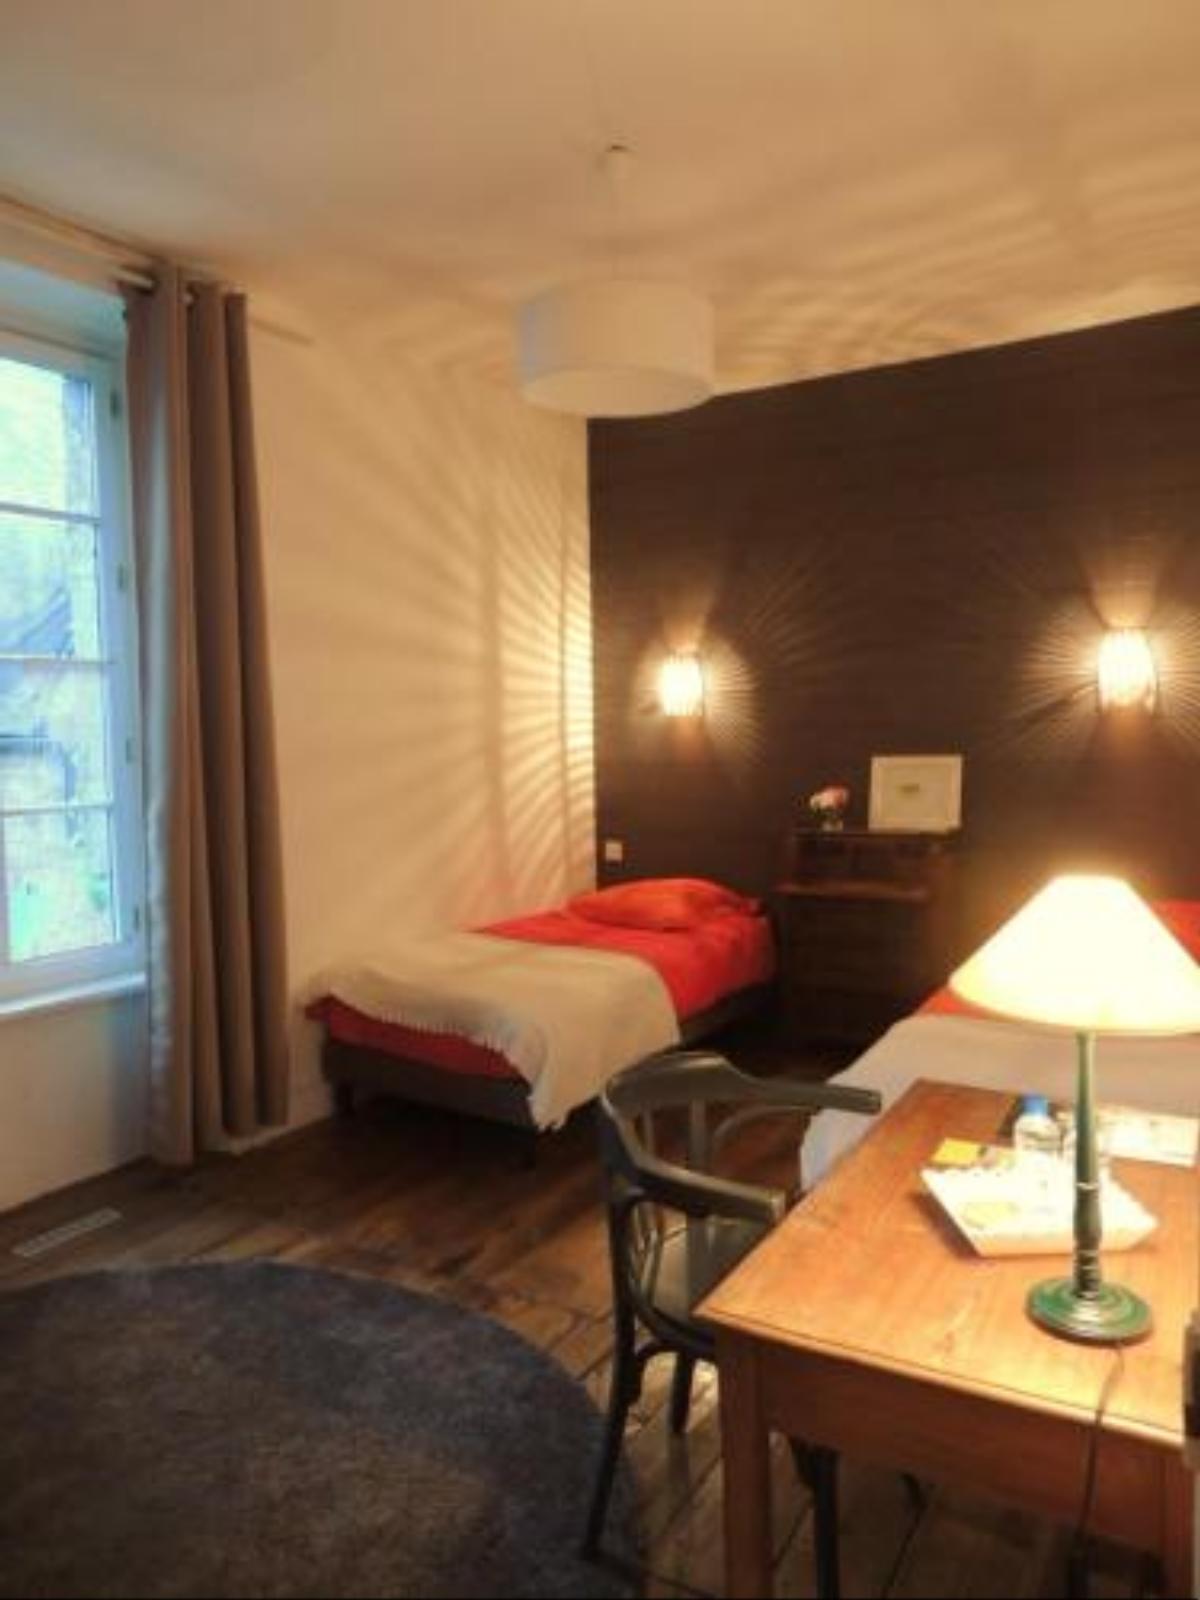 Une Chambre en Bretagne Hotel Collinée France